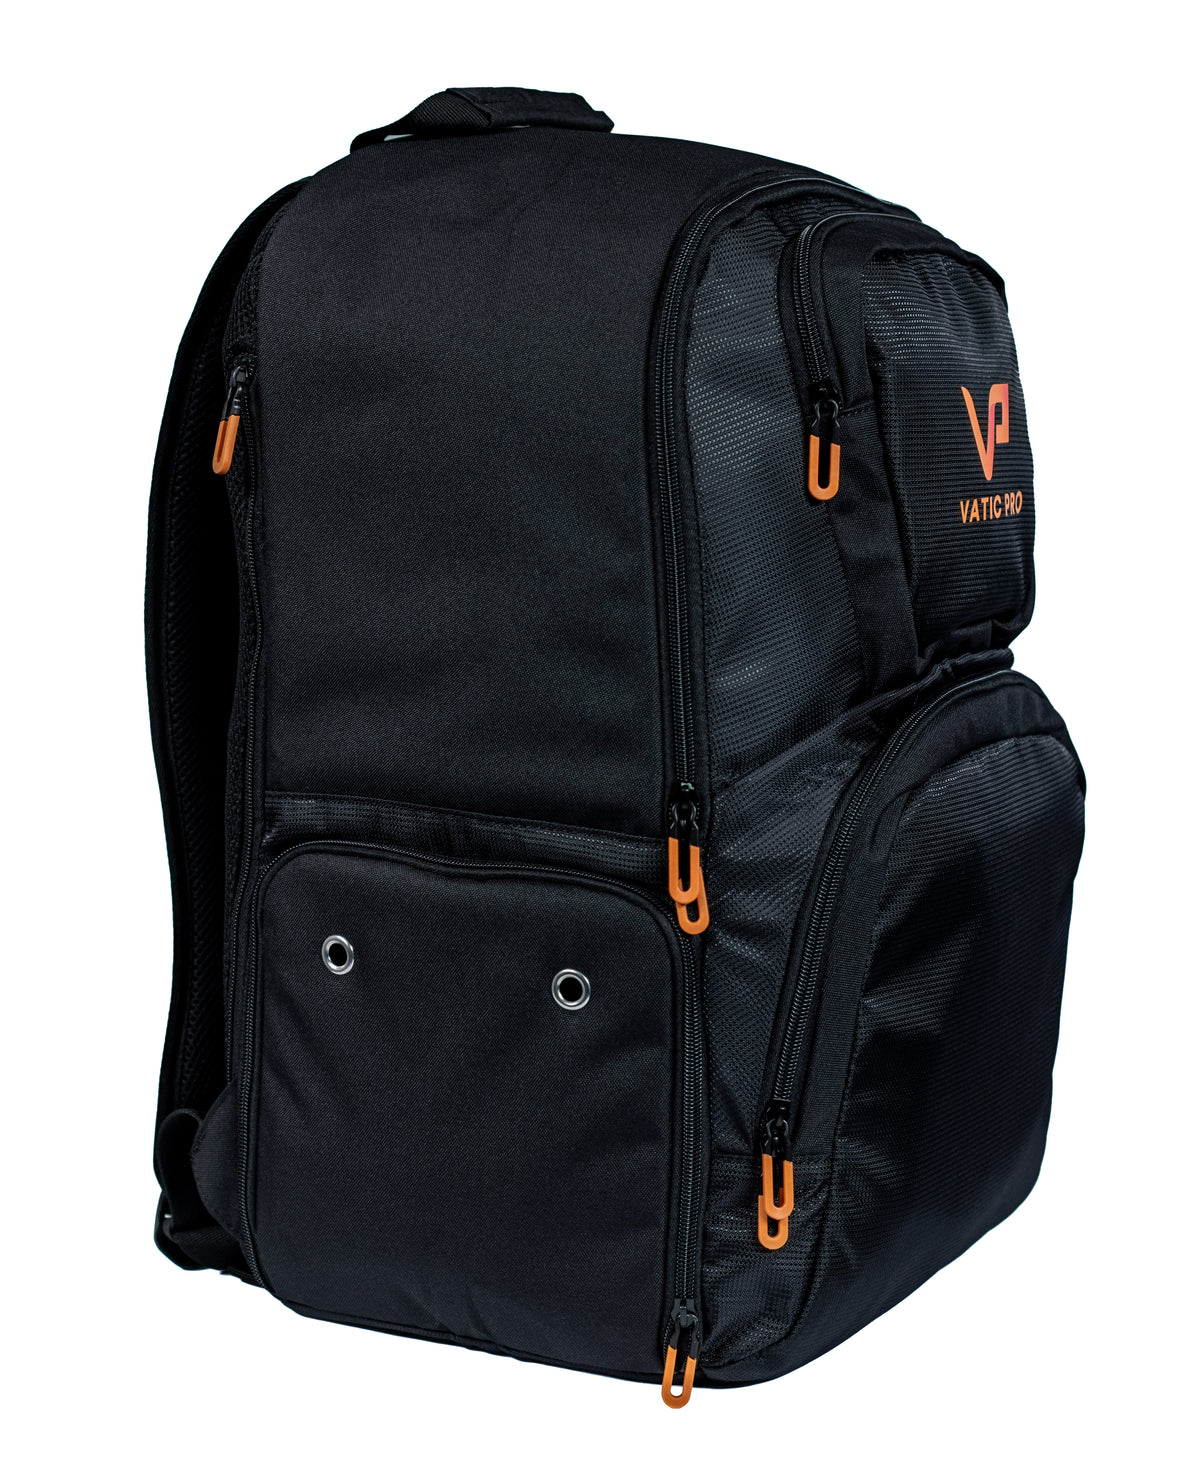 Pickleball Backpack – Vatic Pro